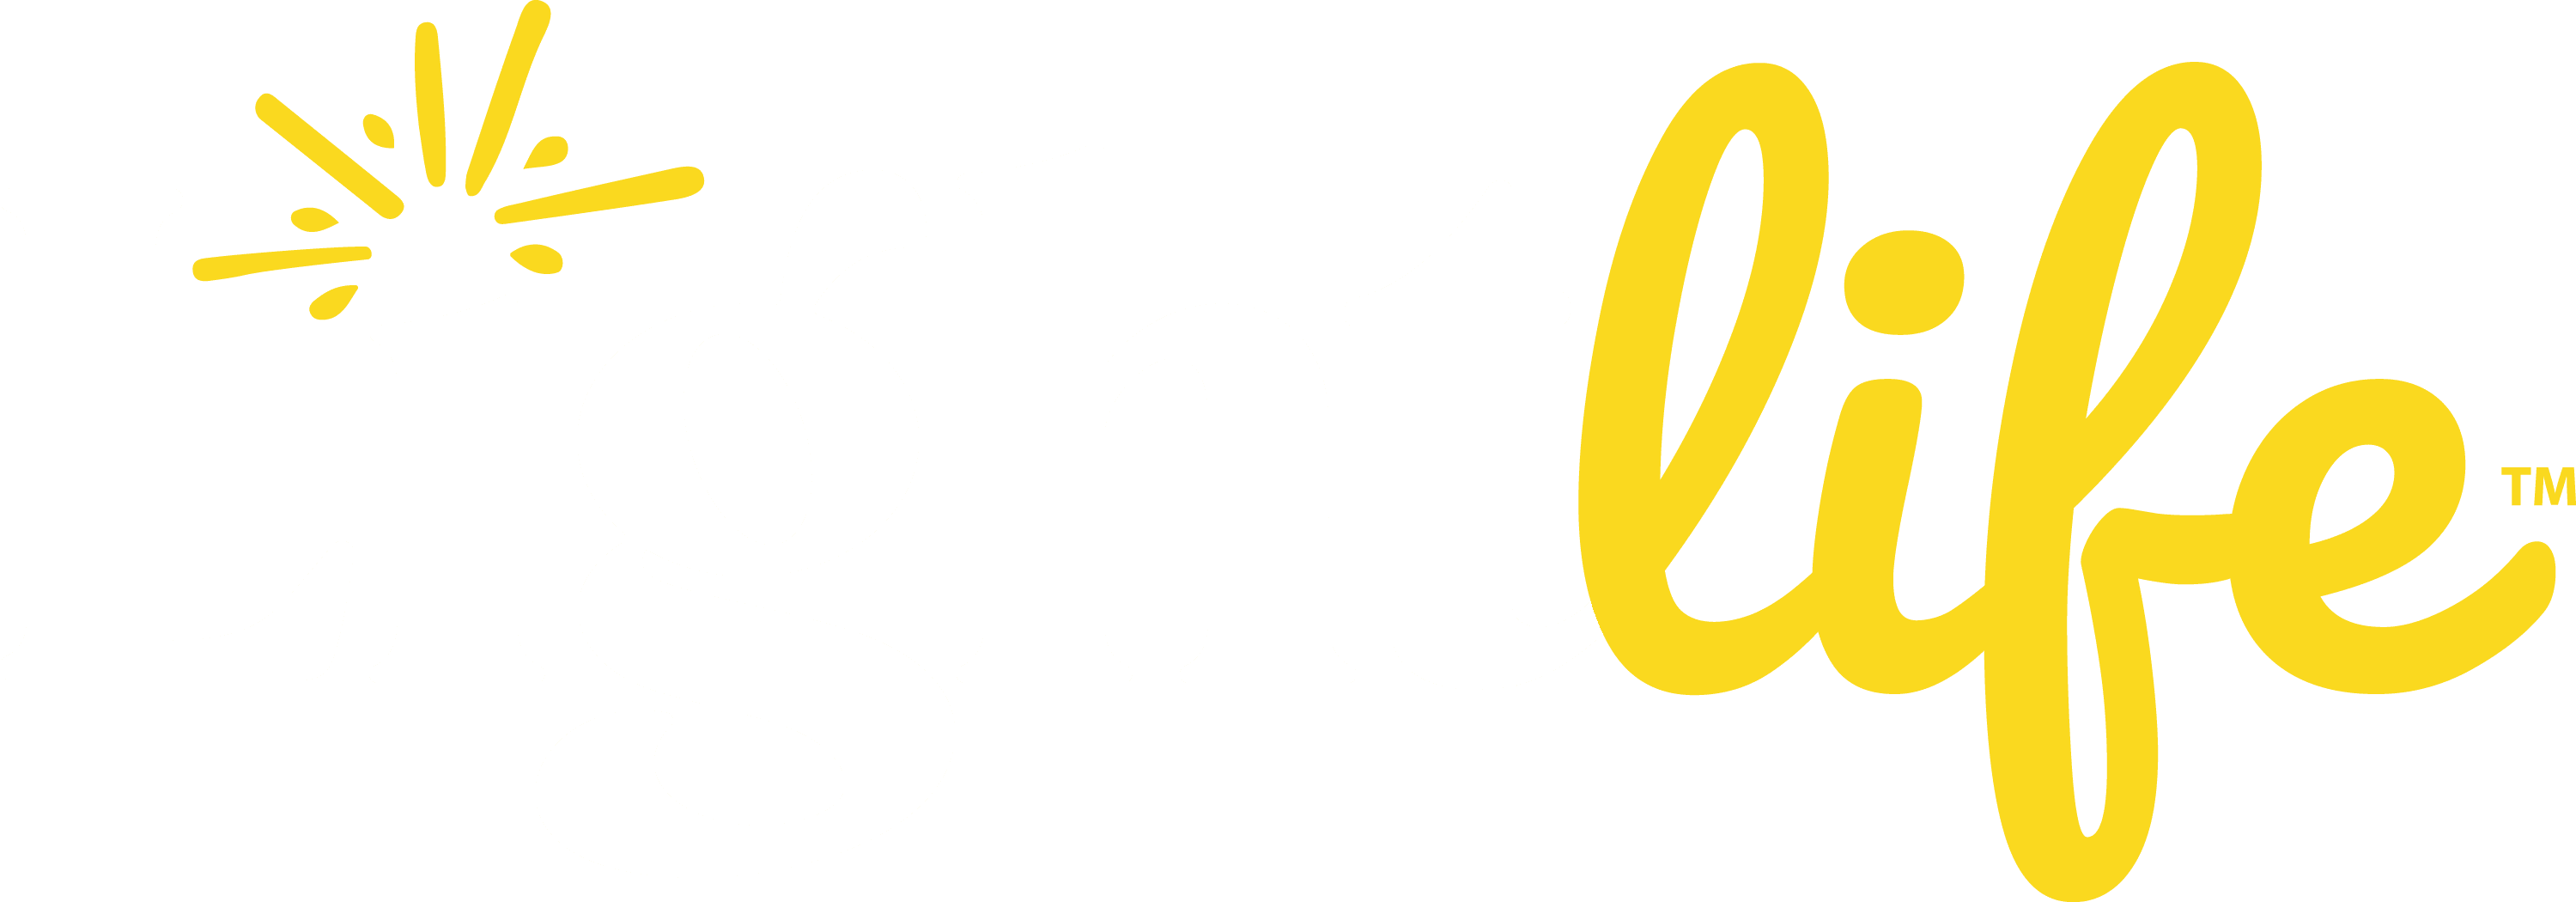 LightLife